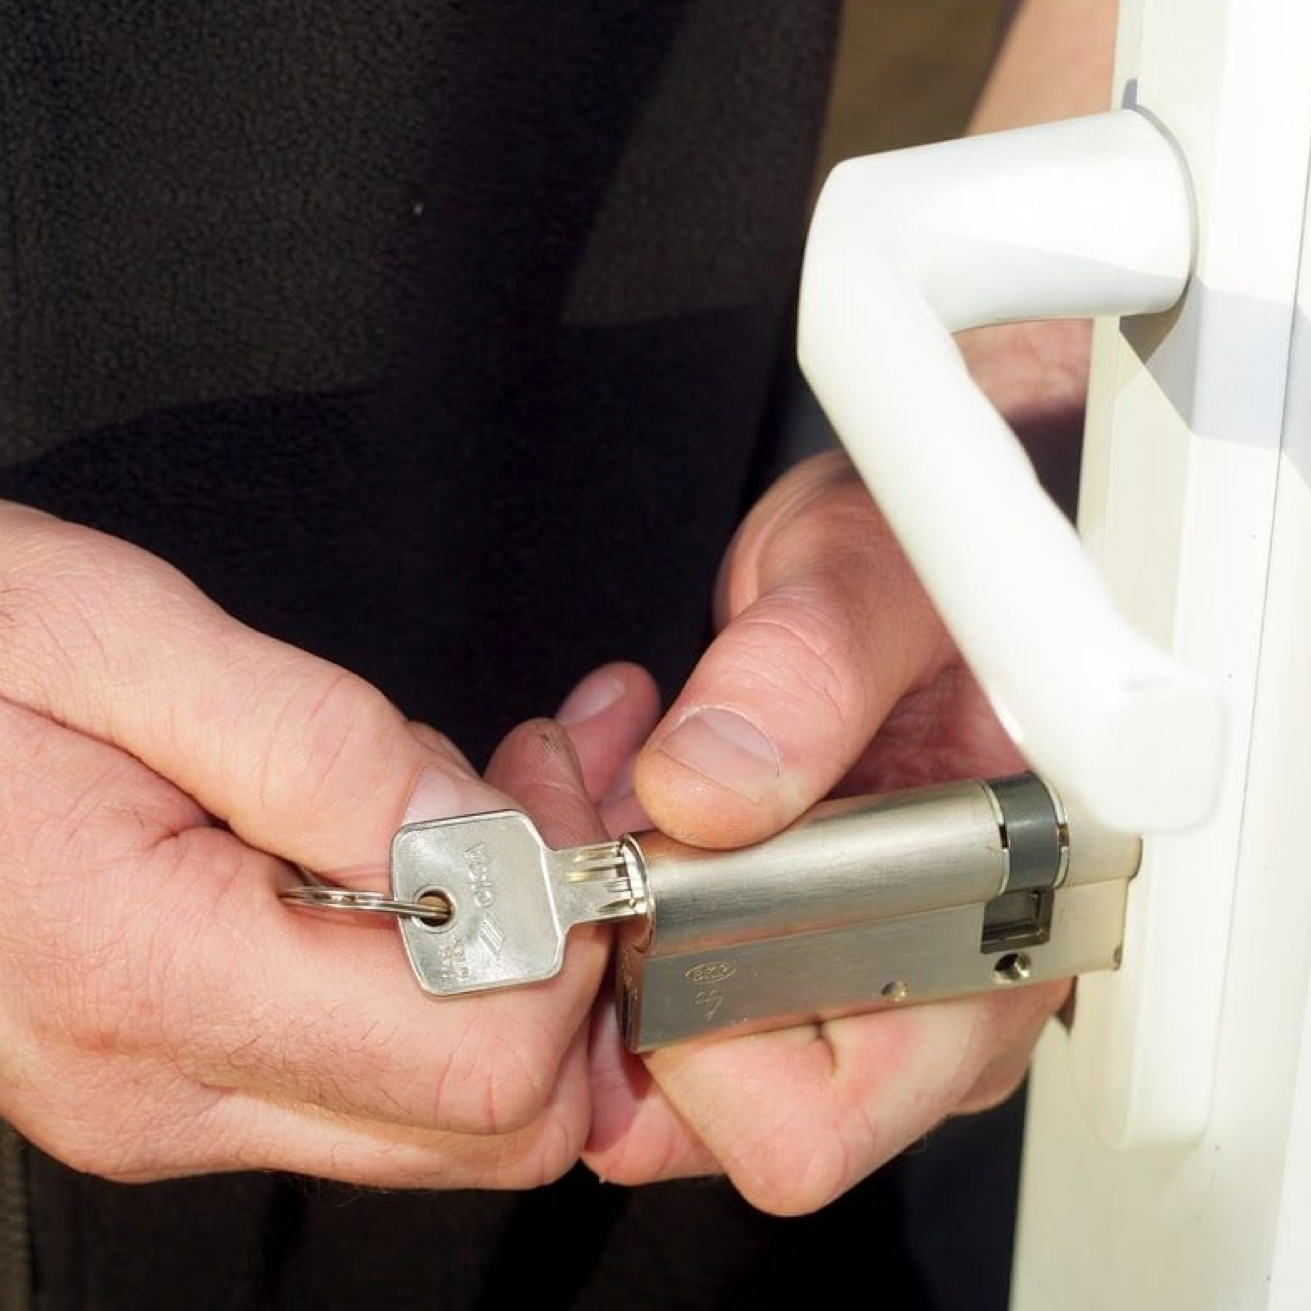 ▷ Abrir puerta con llave puesta: accede a tu propiedad fácilmente